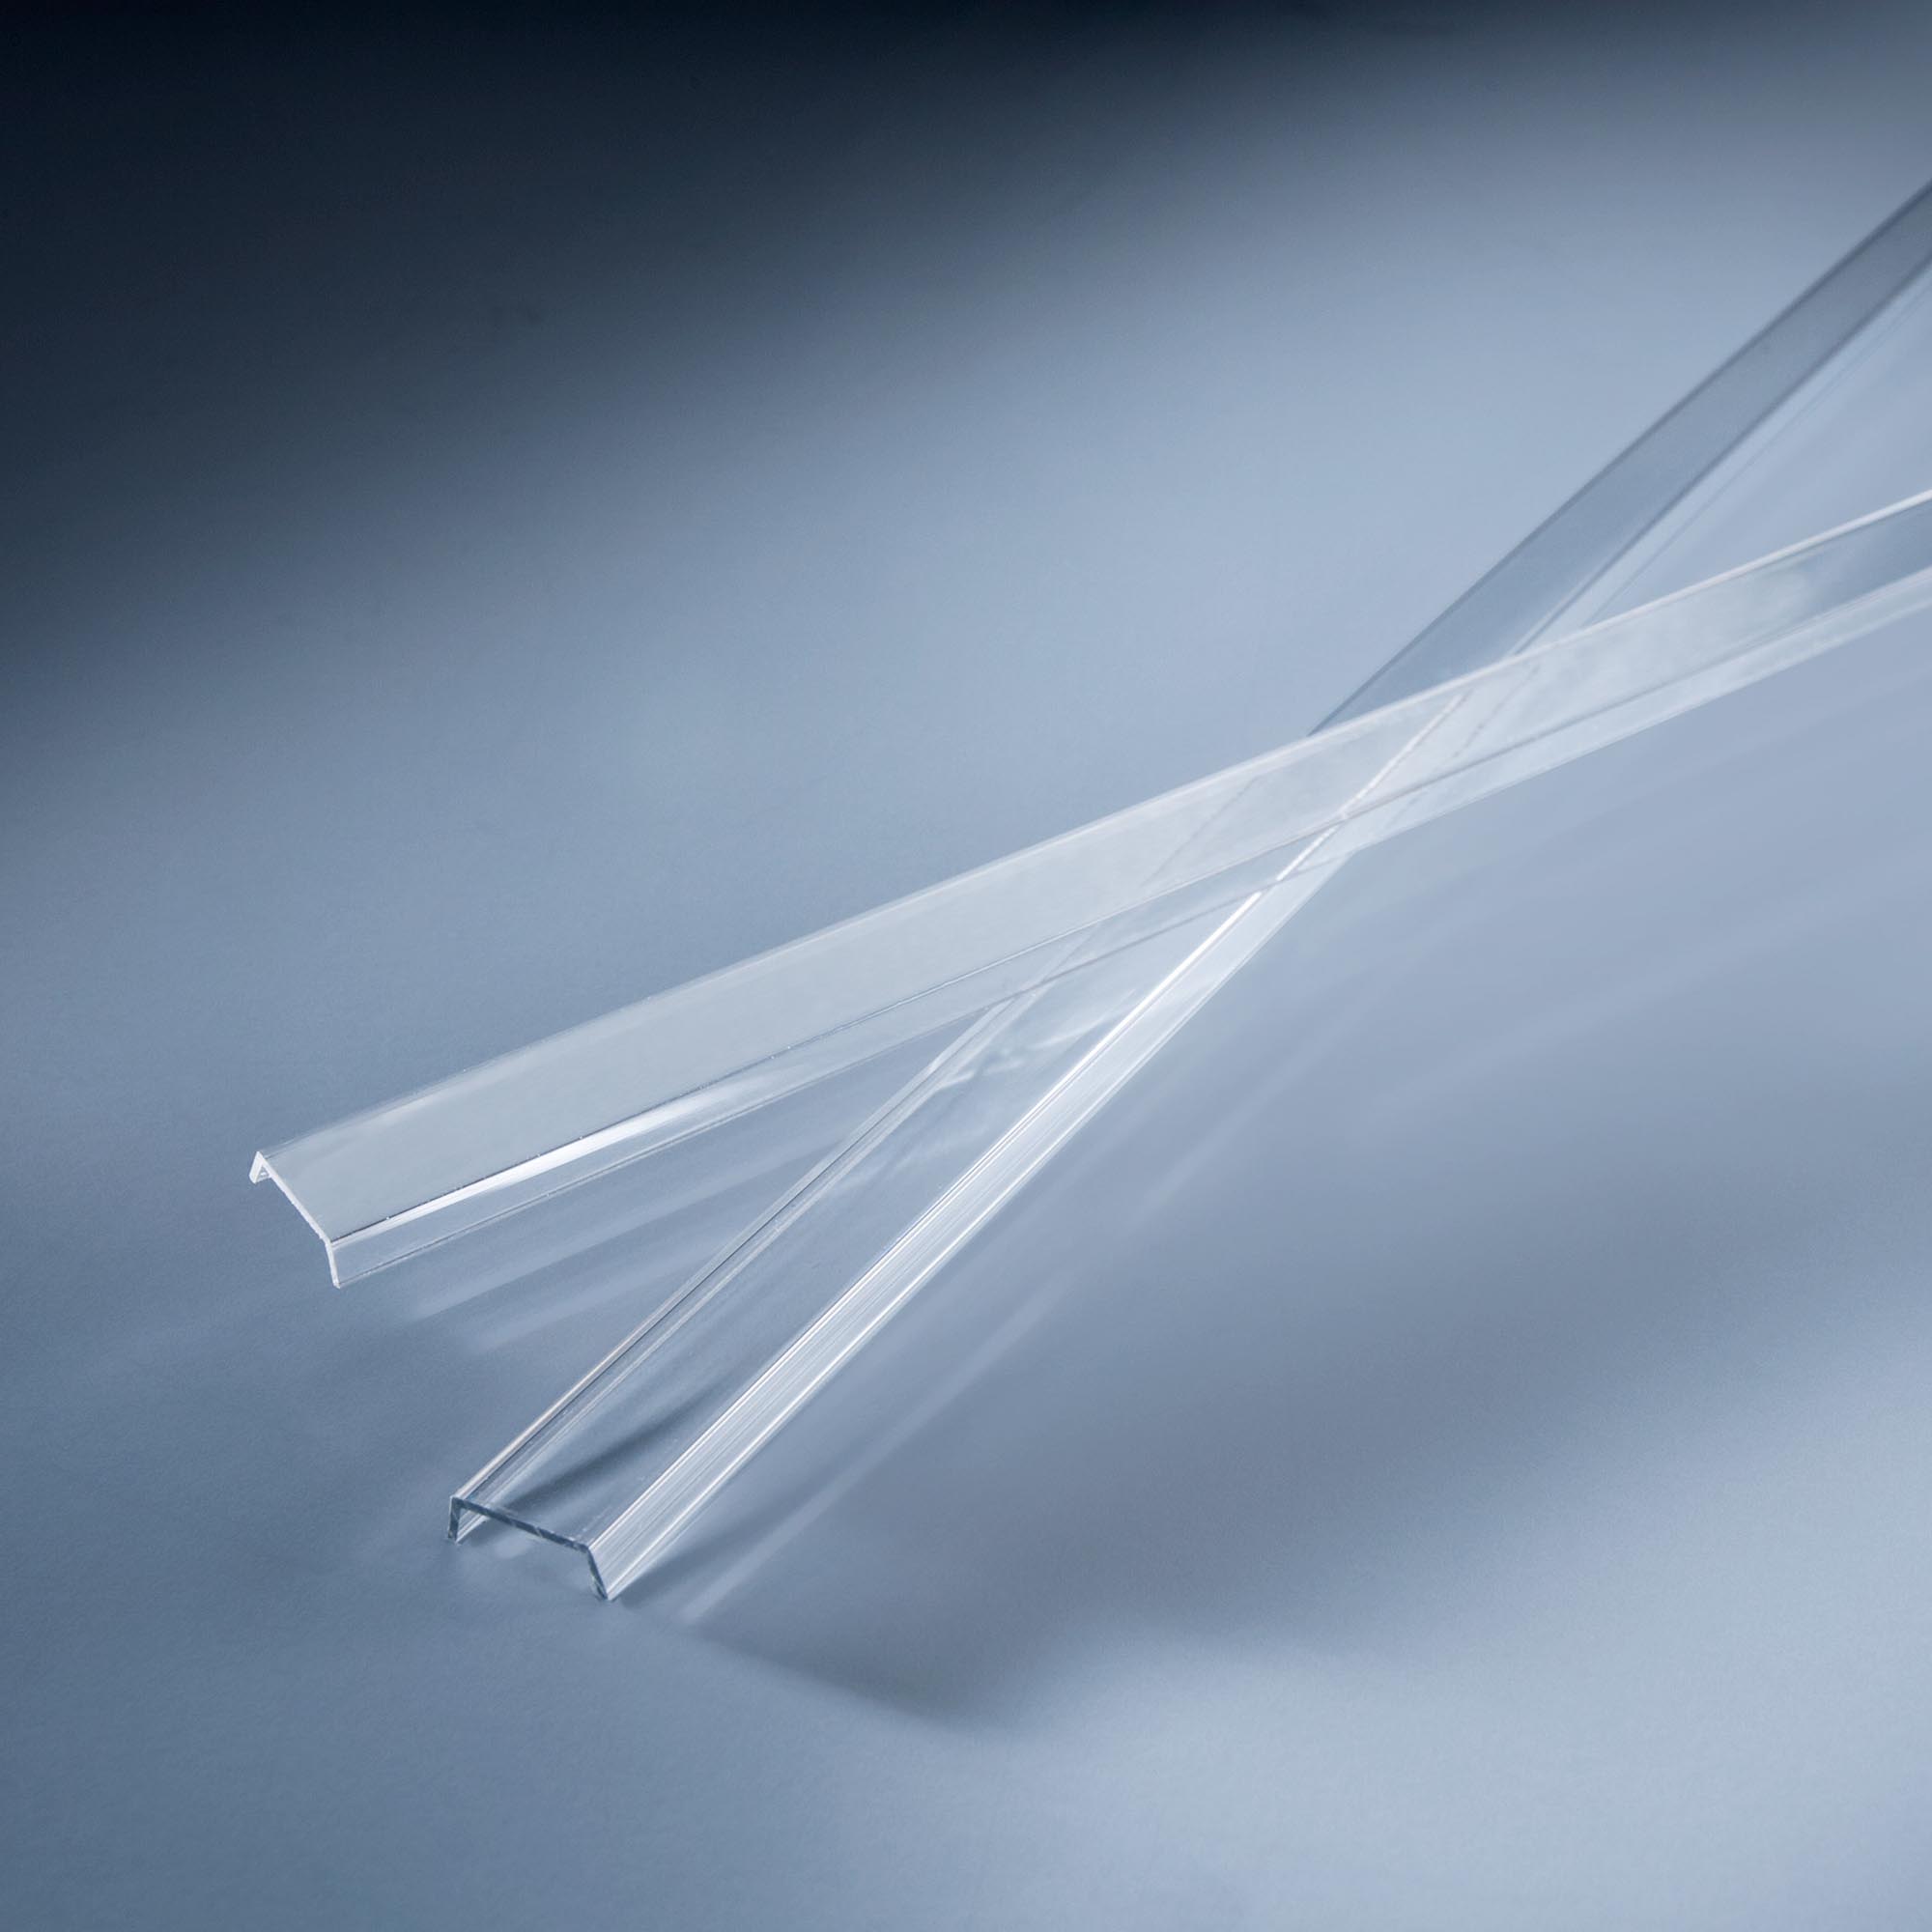 Geam de Plastic Clar lungime 102cm pentru profilele Aluflex de colt Tip 2 1020mm